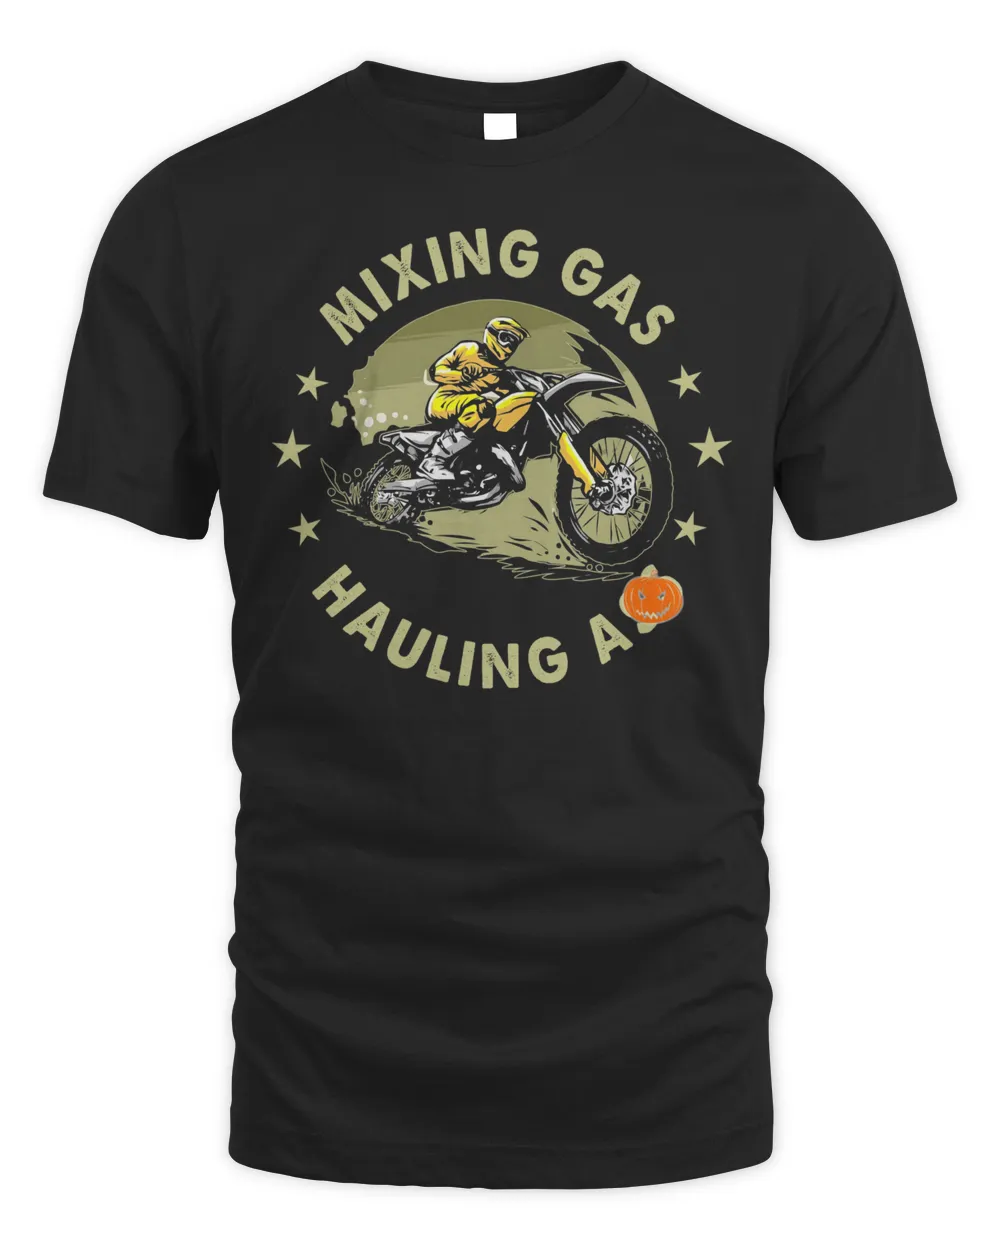 Mixing Gas Hauling Ass Shirt